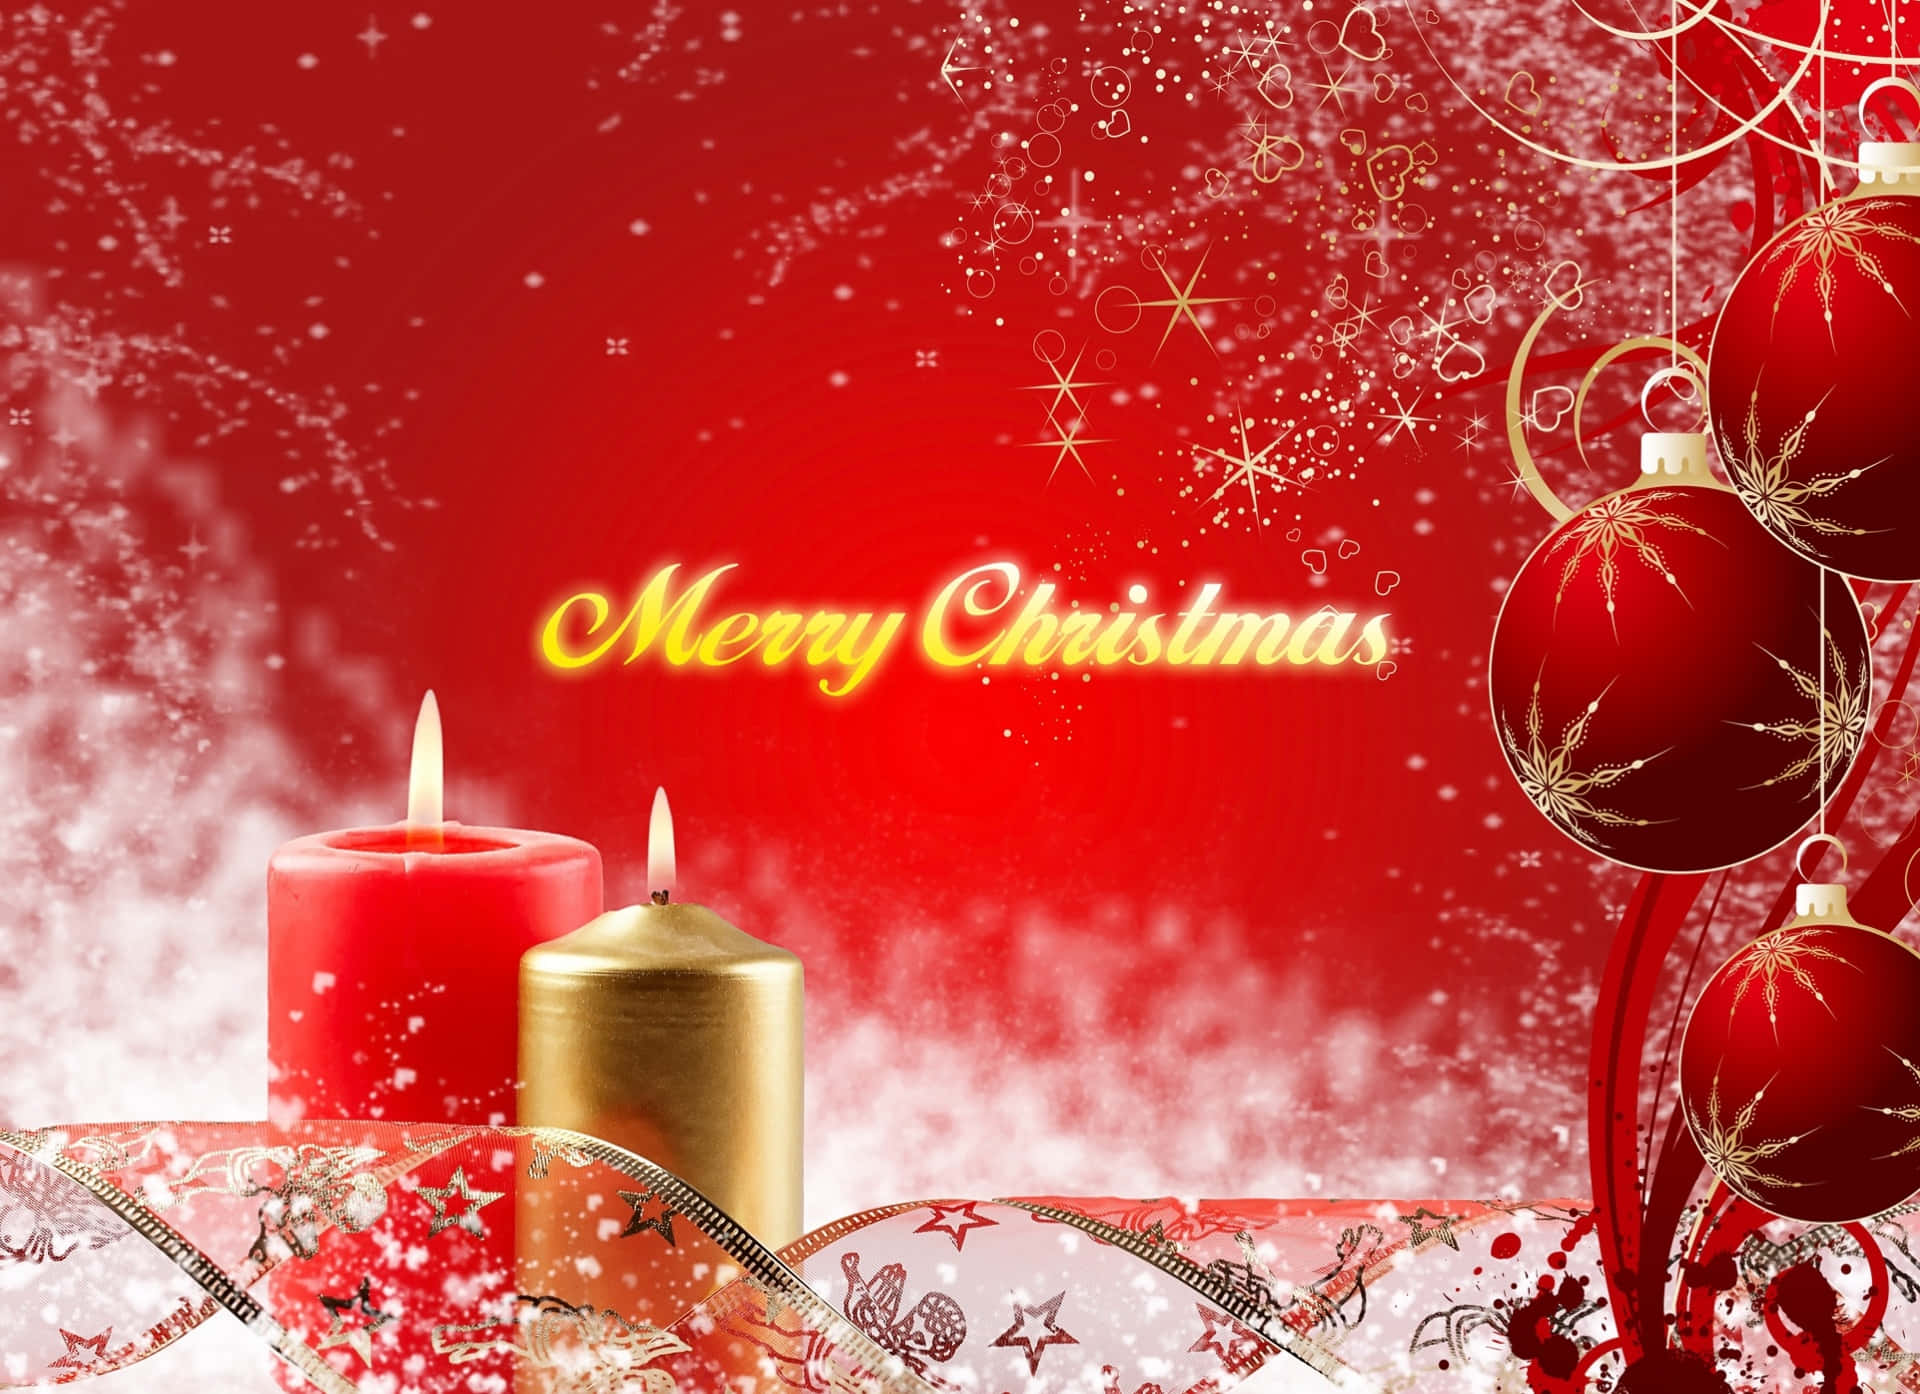 Weihnachtlichehintergrundbilder Mit Kerzen Und Roten Dekorationen.